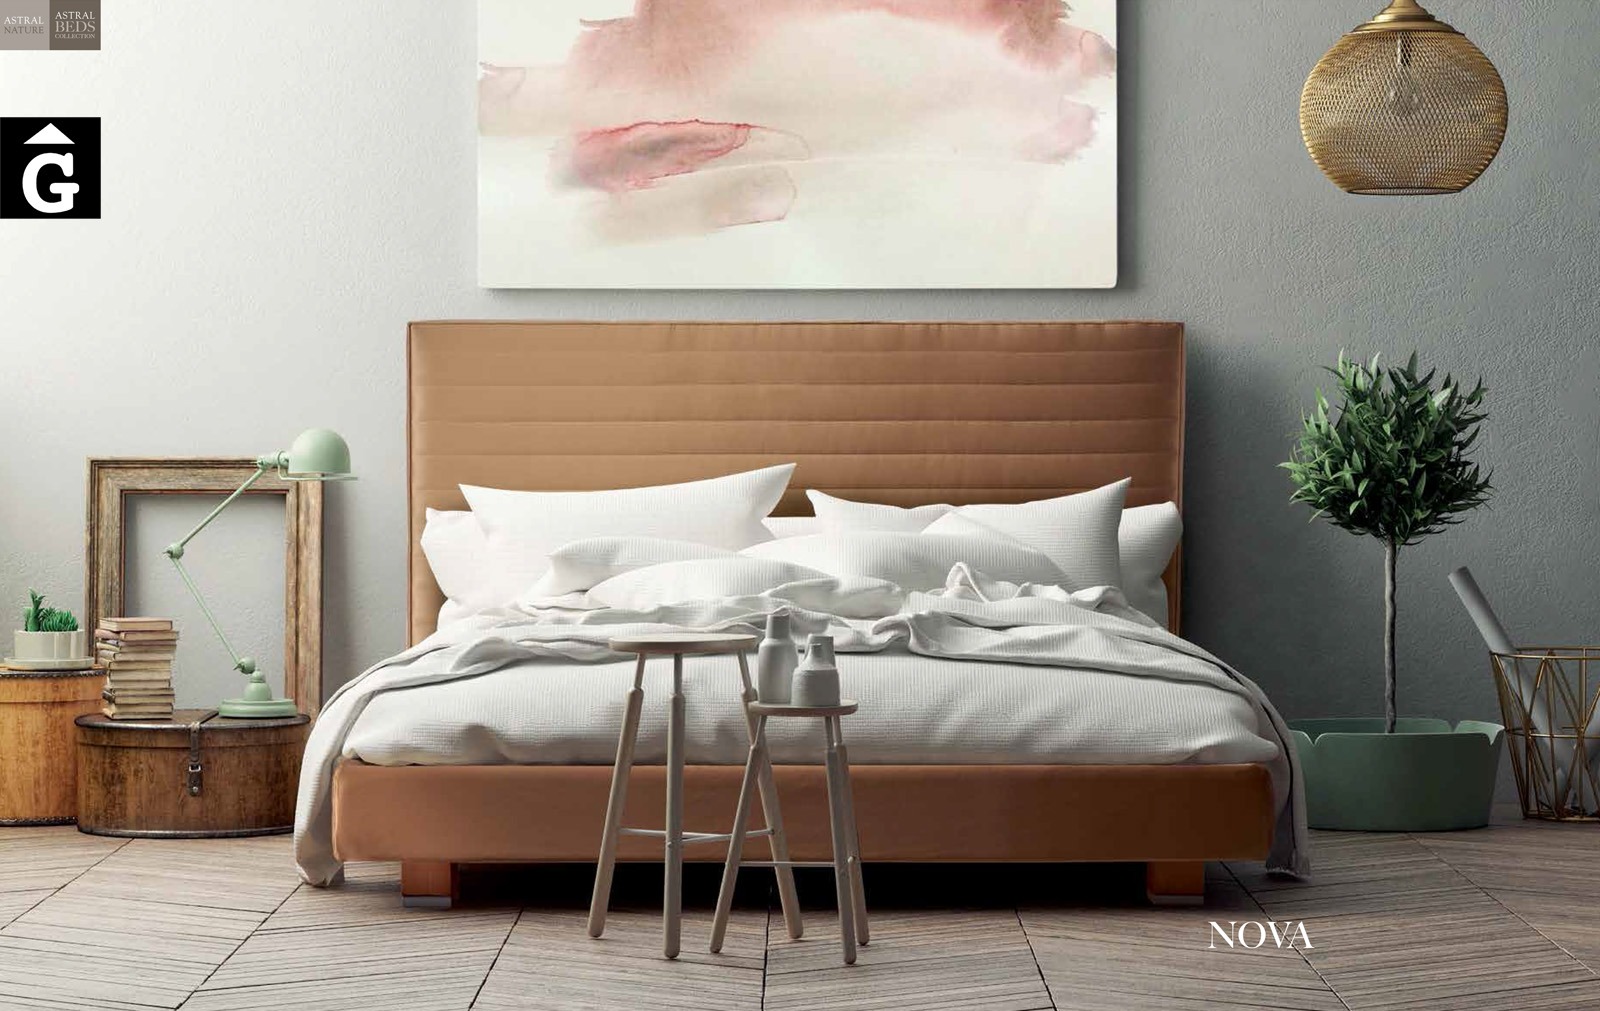 Nova llit entapissat Beds Astral Nature descans qualitat natural i salut junts per mobles Gifreu